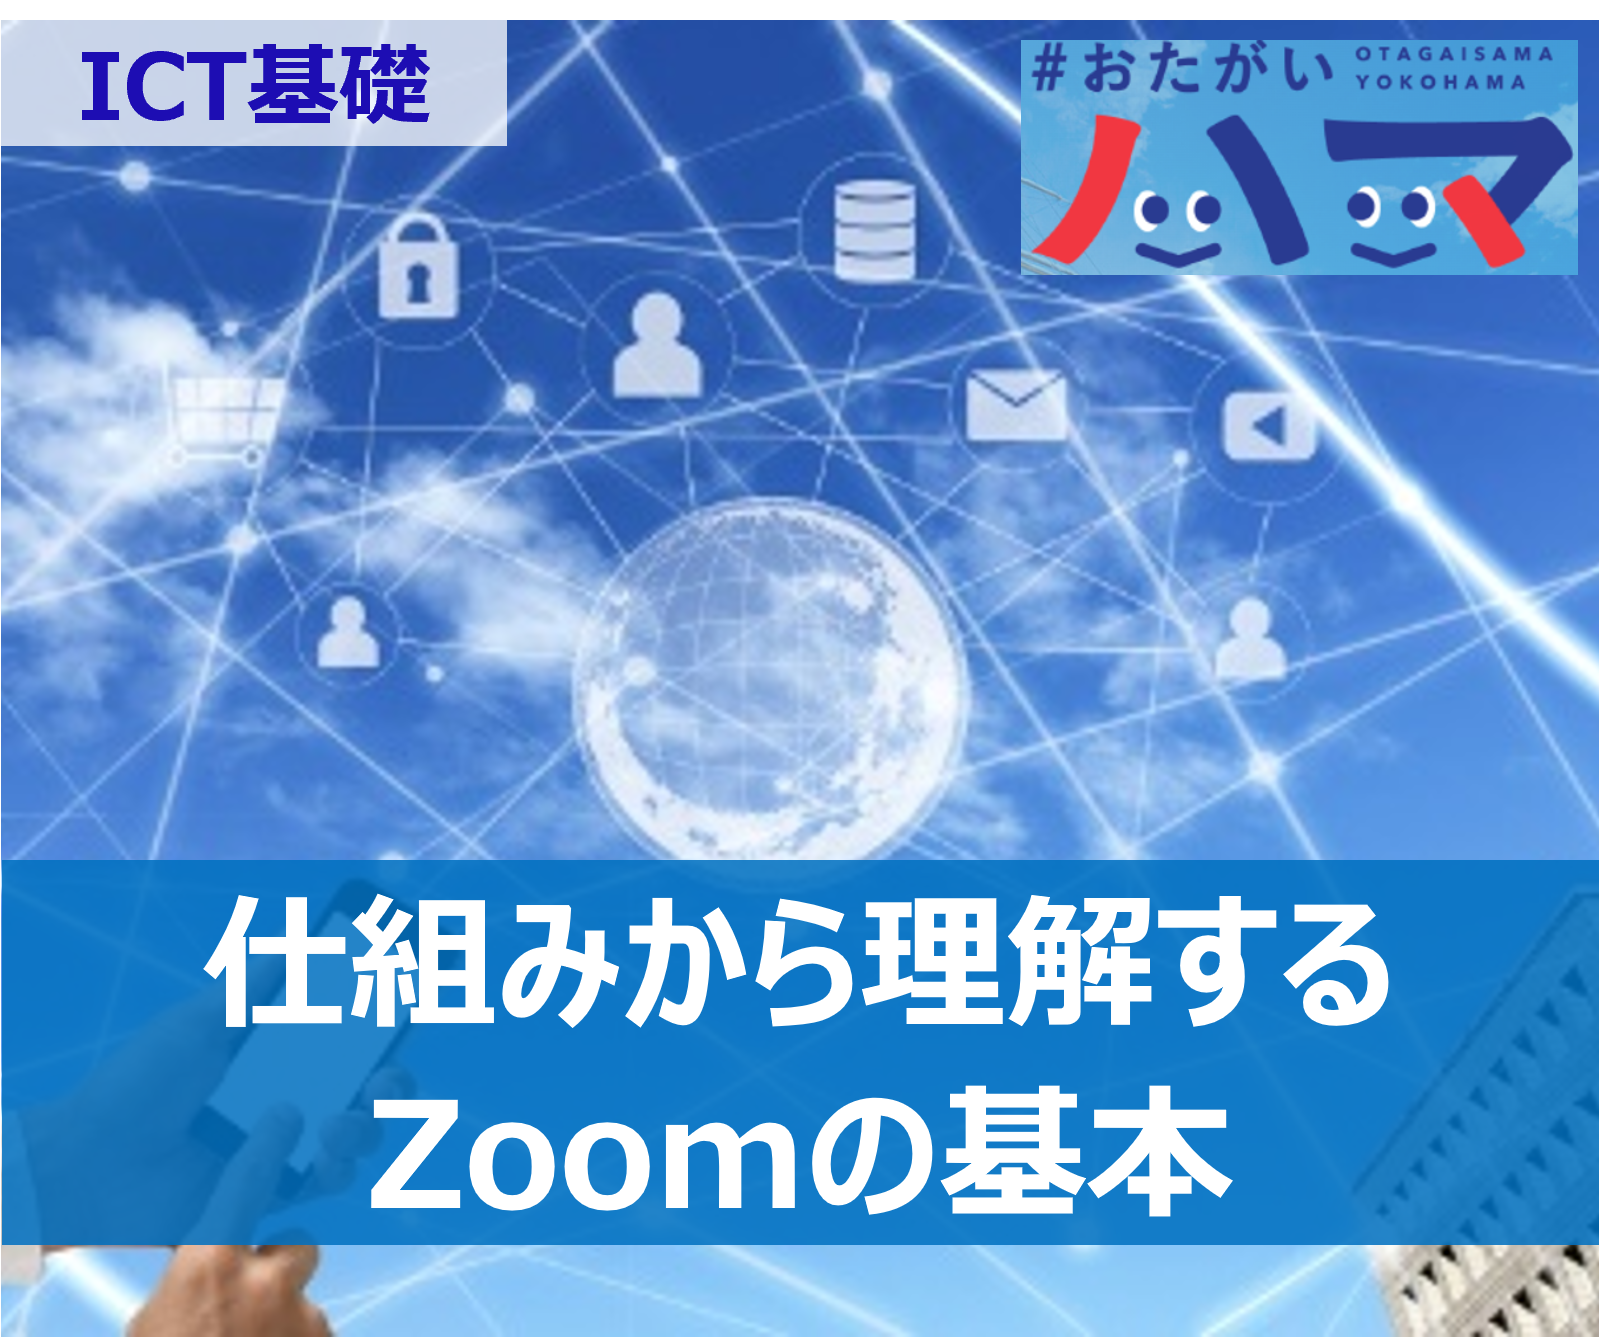 Zoom使い方講座 / Zoomとは - ICT基礎